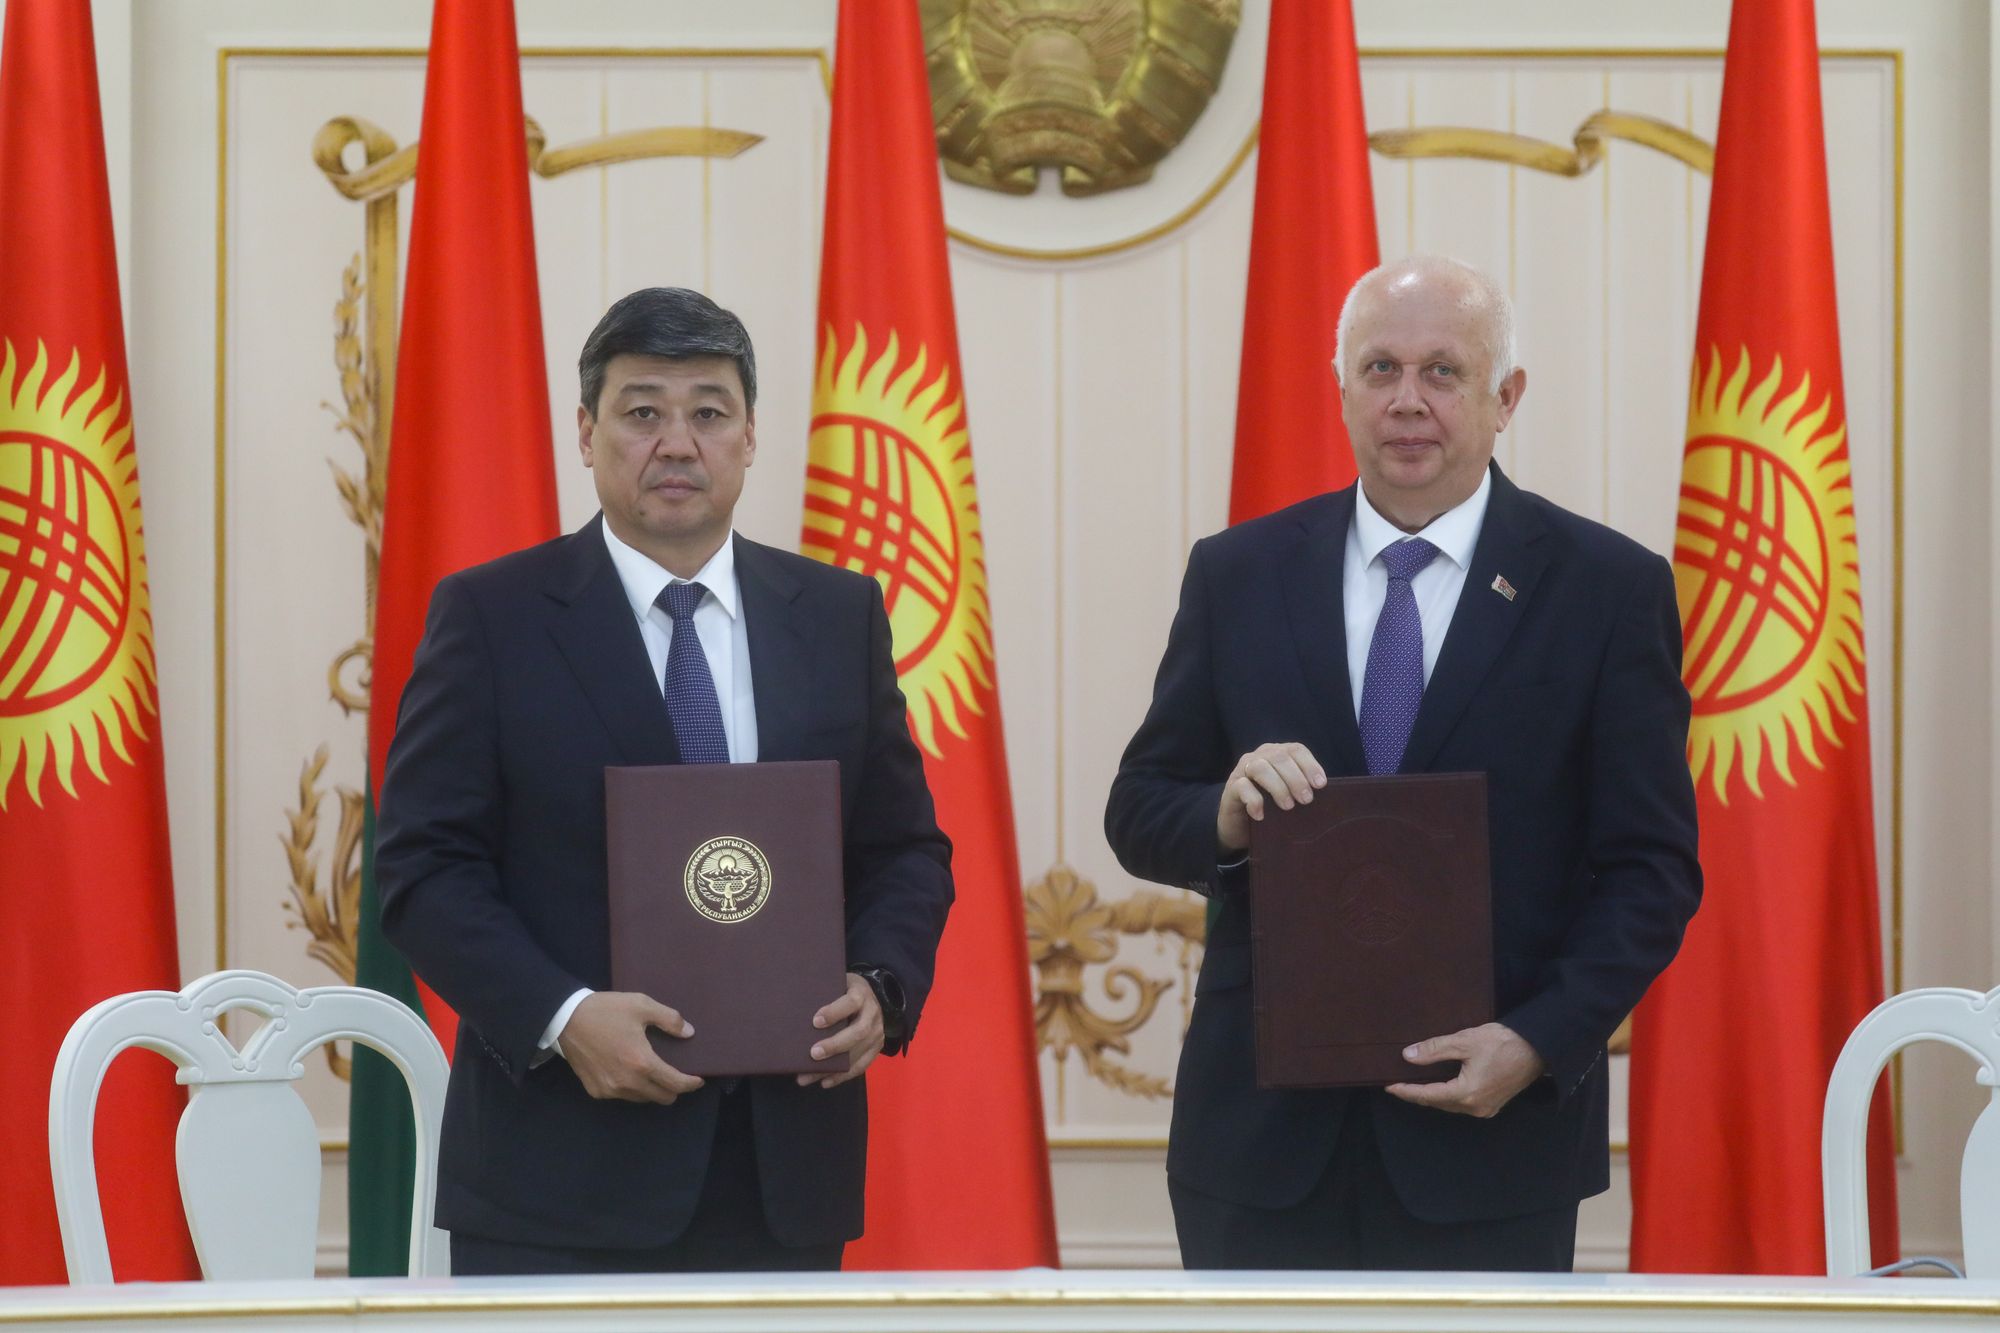 Кыргызстан хочет привлечь Беларусь к совместной добыче полезных ископаемых в КР